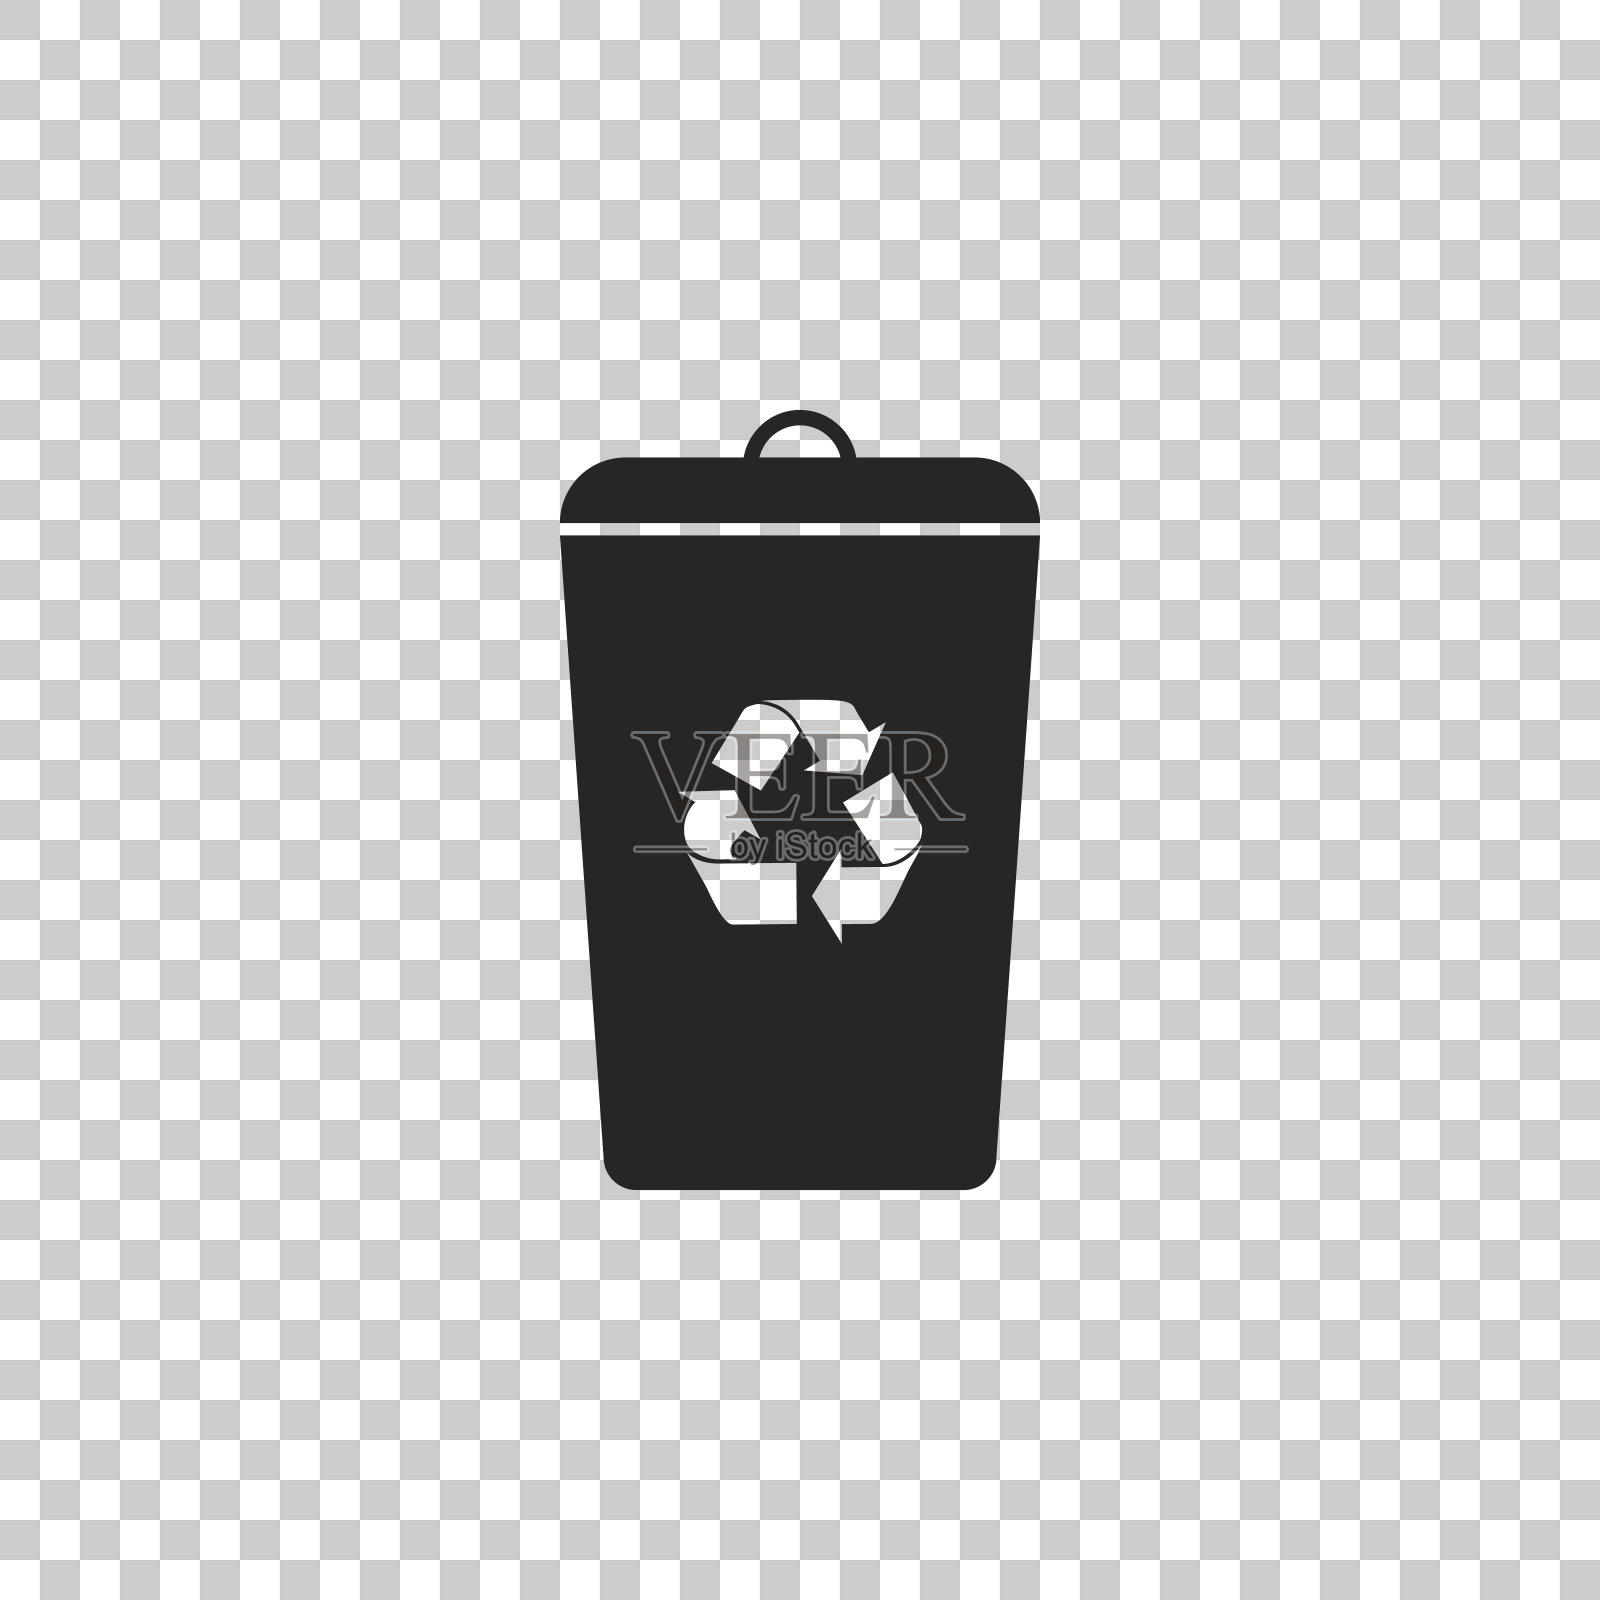 回收站与回收符号图标隔离在透明的背景。垃圾桶图标。平面设计。矢量图图标素材